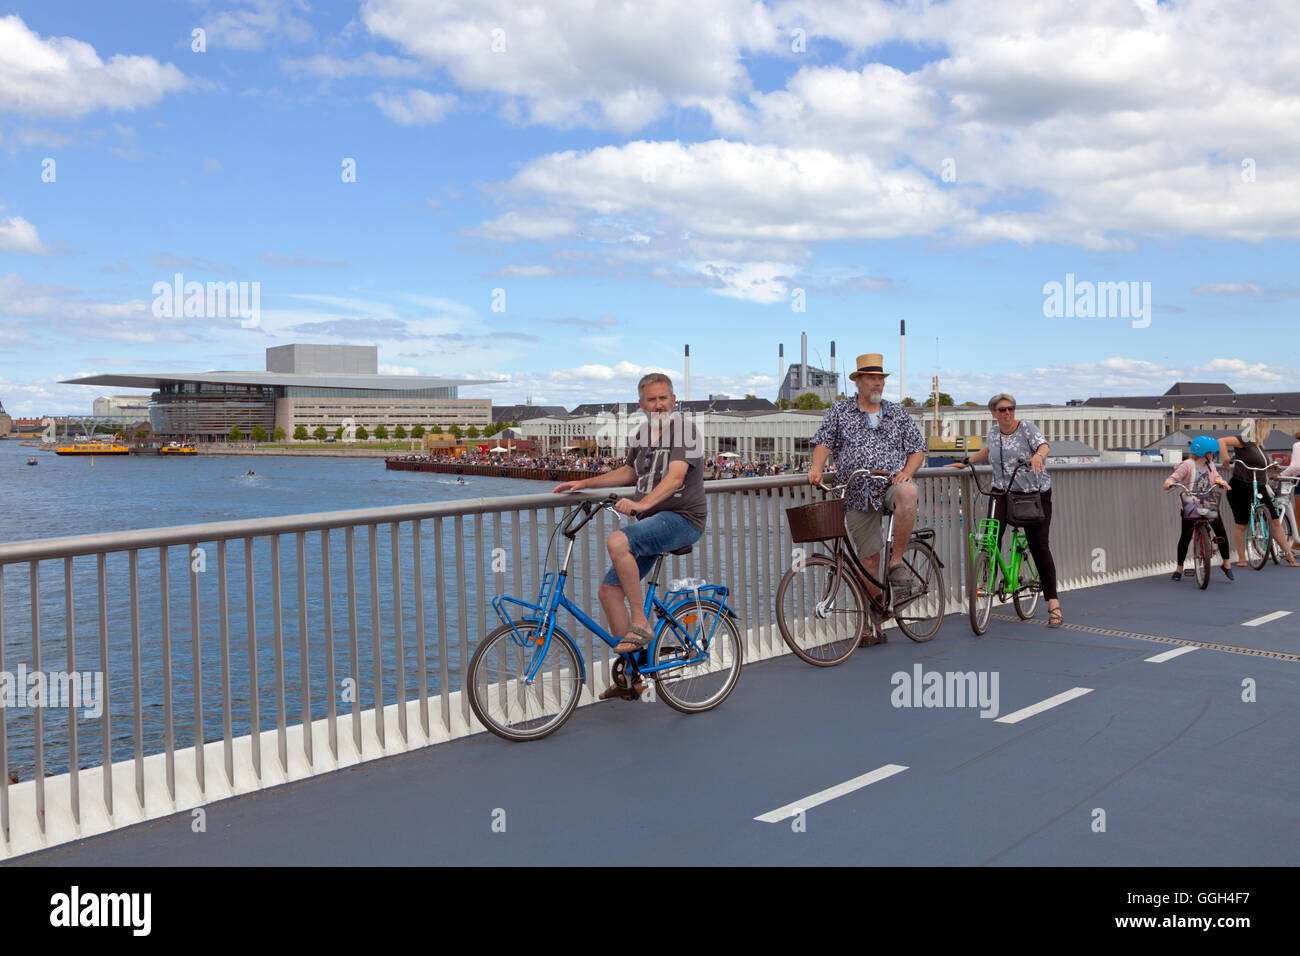 Radfahren Besucher auf die neue Fußgänger- und Radfahrer-Brücke, der Inner Harbour Bridge Verbindung von Nyhavn und Christianshavn. Kopenhagen, Dänemark. Stockfoto